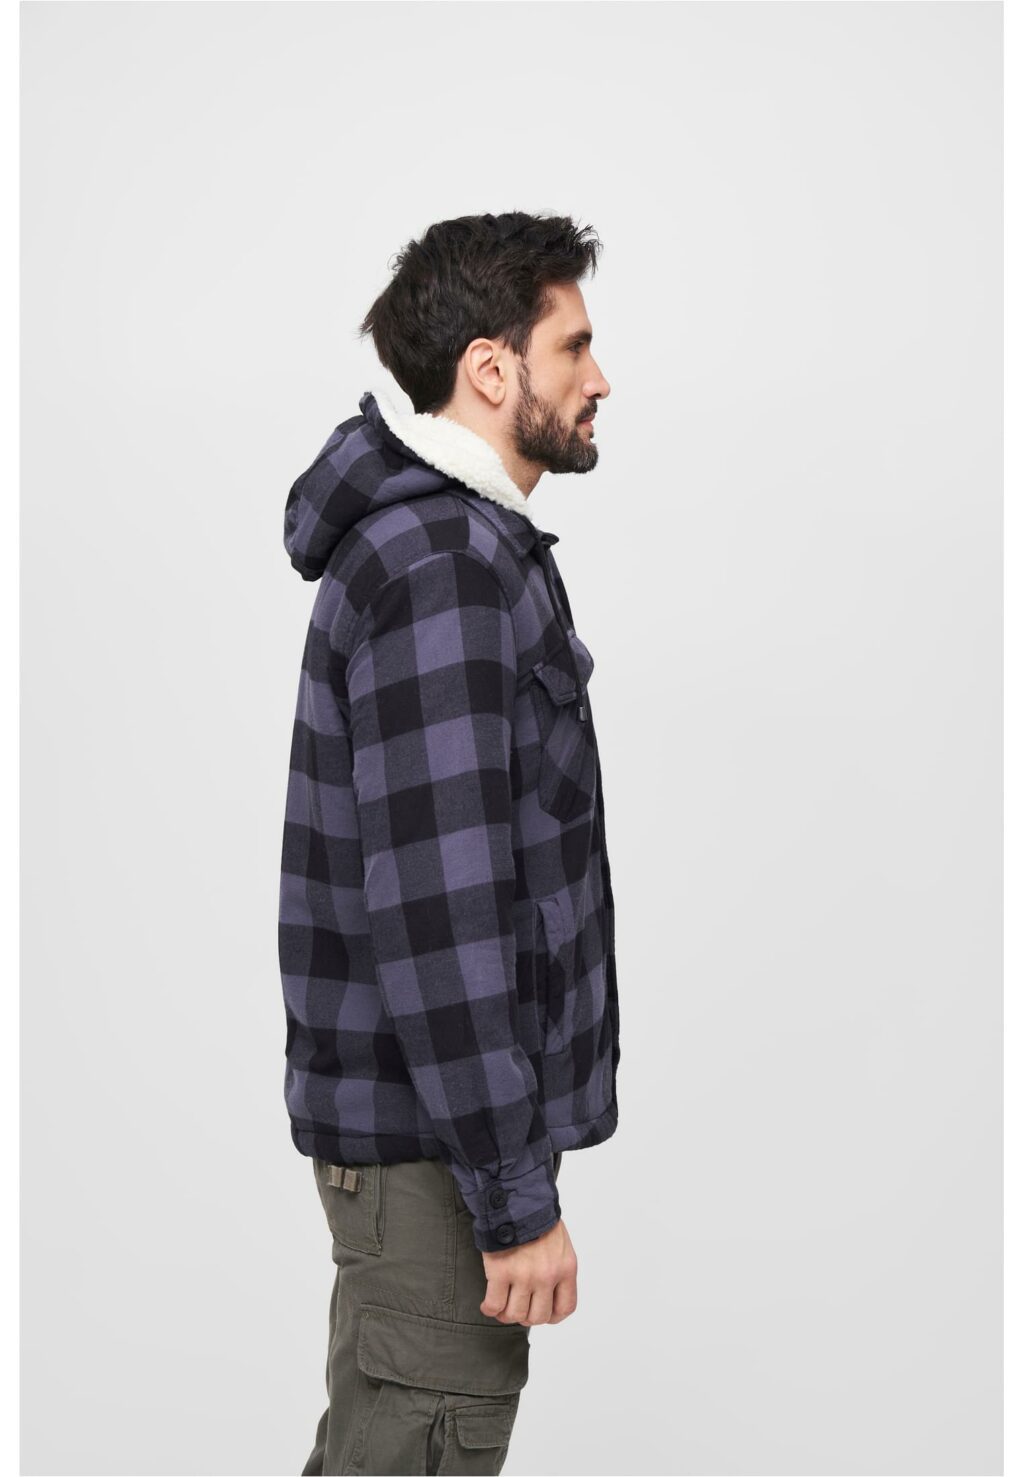 Brandit Lumberjacket hooded black/grey BD3172